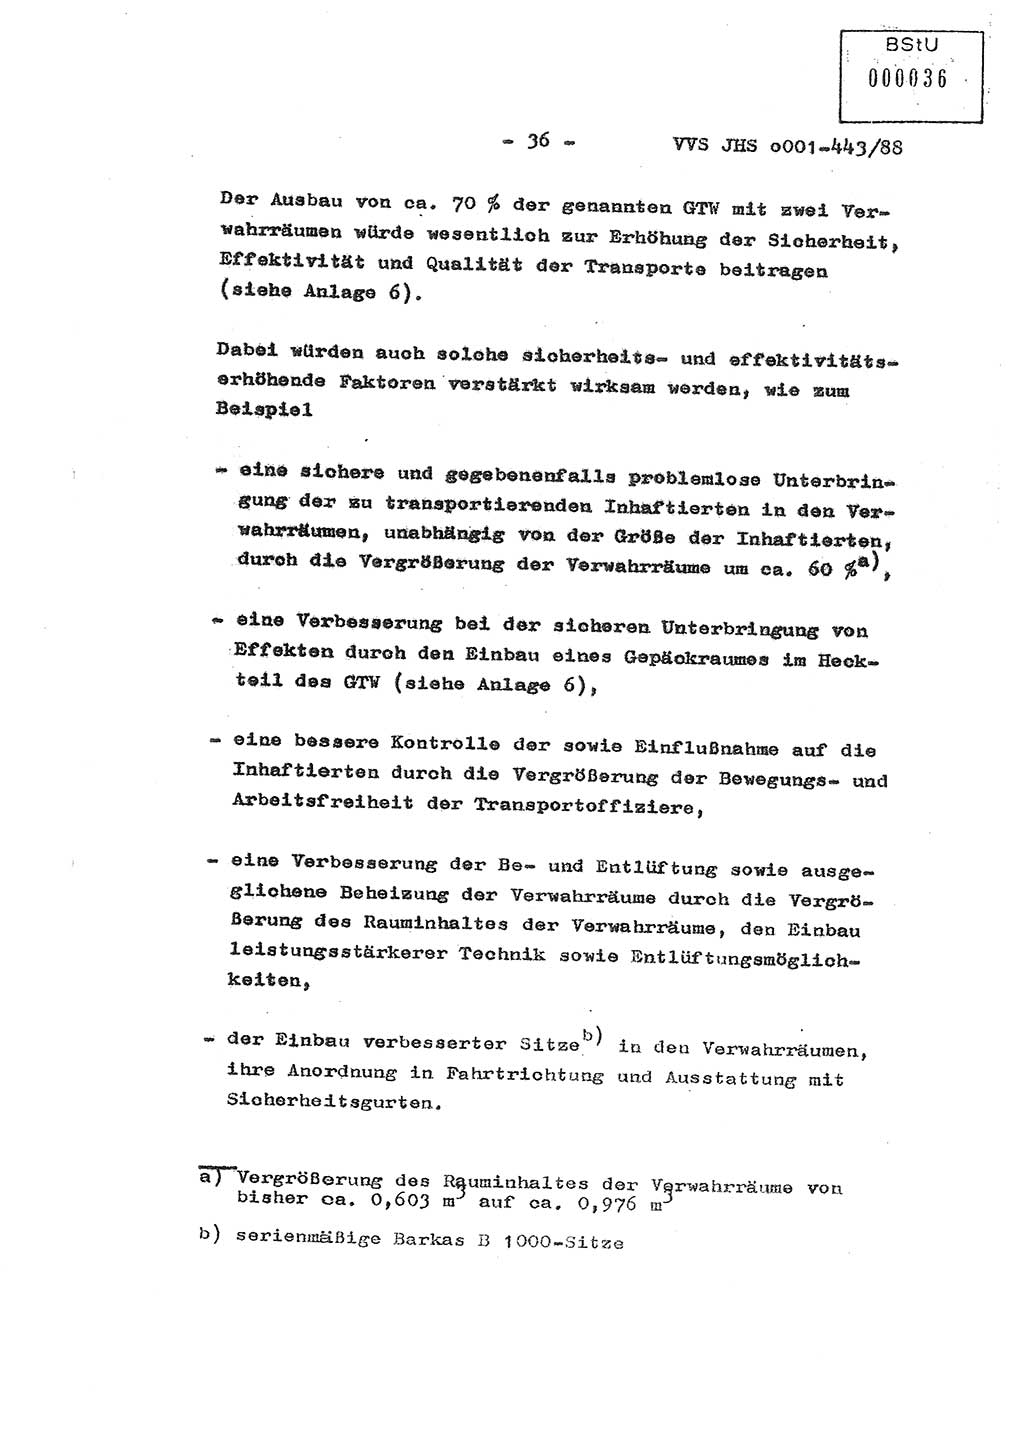 Diplomarbeit Hauptmann Michael Rast (Abt. ⅩⅣ), Major Bernd Rahaus (Abt. ⅩⅣ), Ministerium für Staatssicherheit (MfS) [Deutsche Demokratische Republik (DDR)], Juristische Hochschule (JHS), Vertrauliche Verschlußsache (VVS) o001-443/88, Potsdam 1988, Seite 36 (Dipl.-Arb. MfS DDR JHS VVS o001-443/88 1988, S. 36)